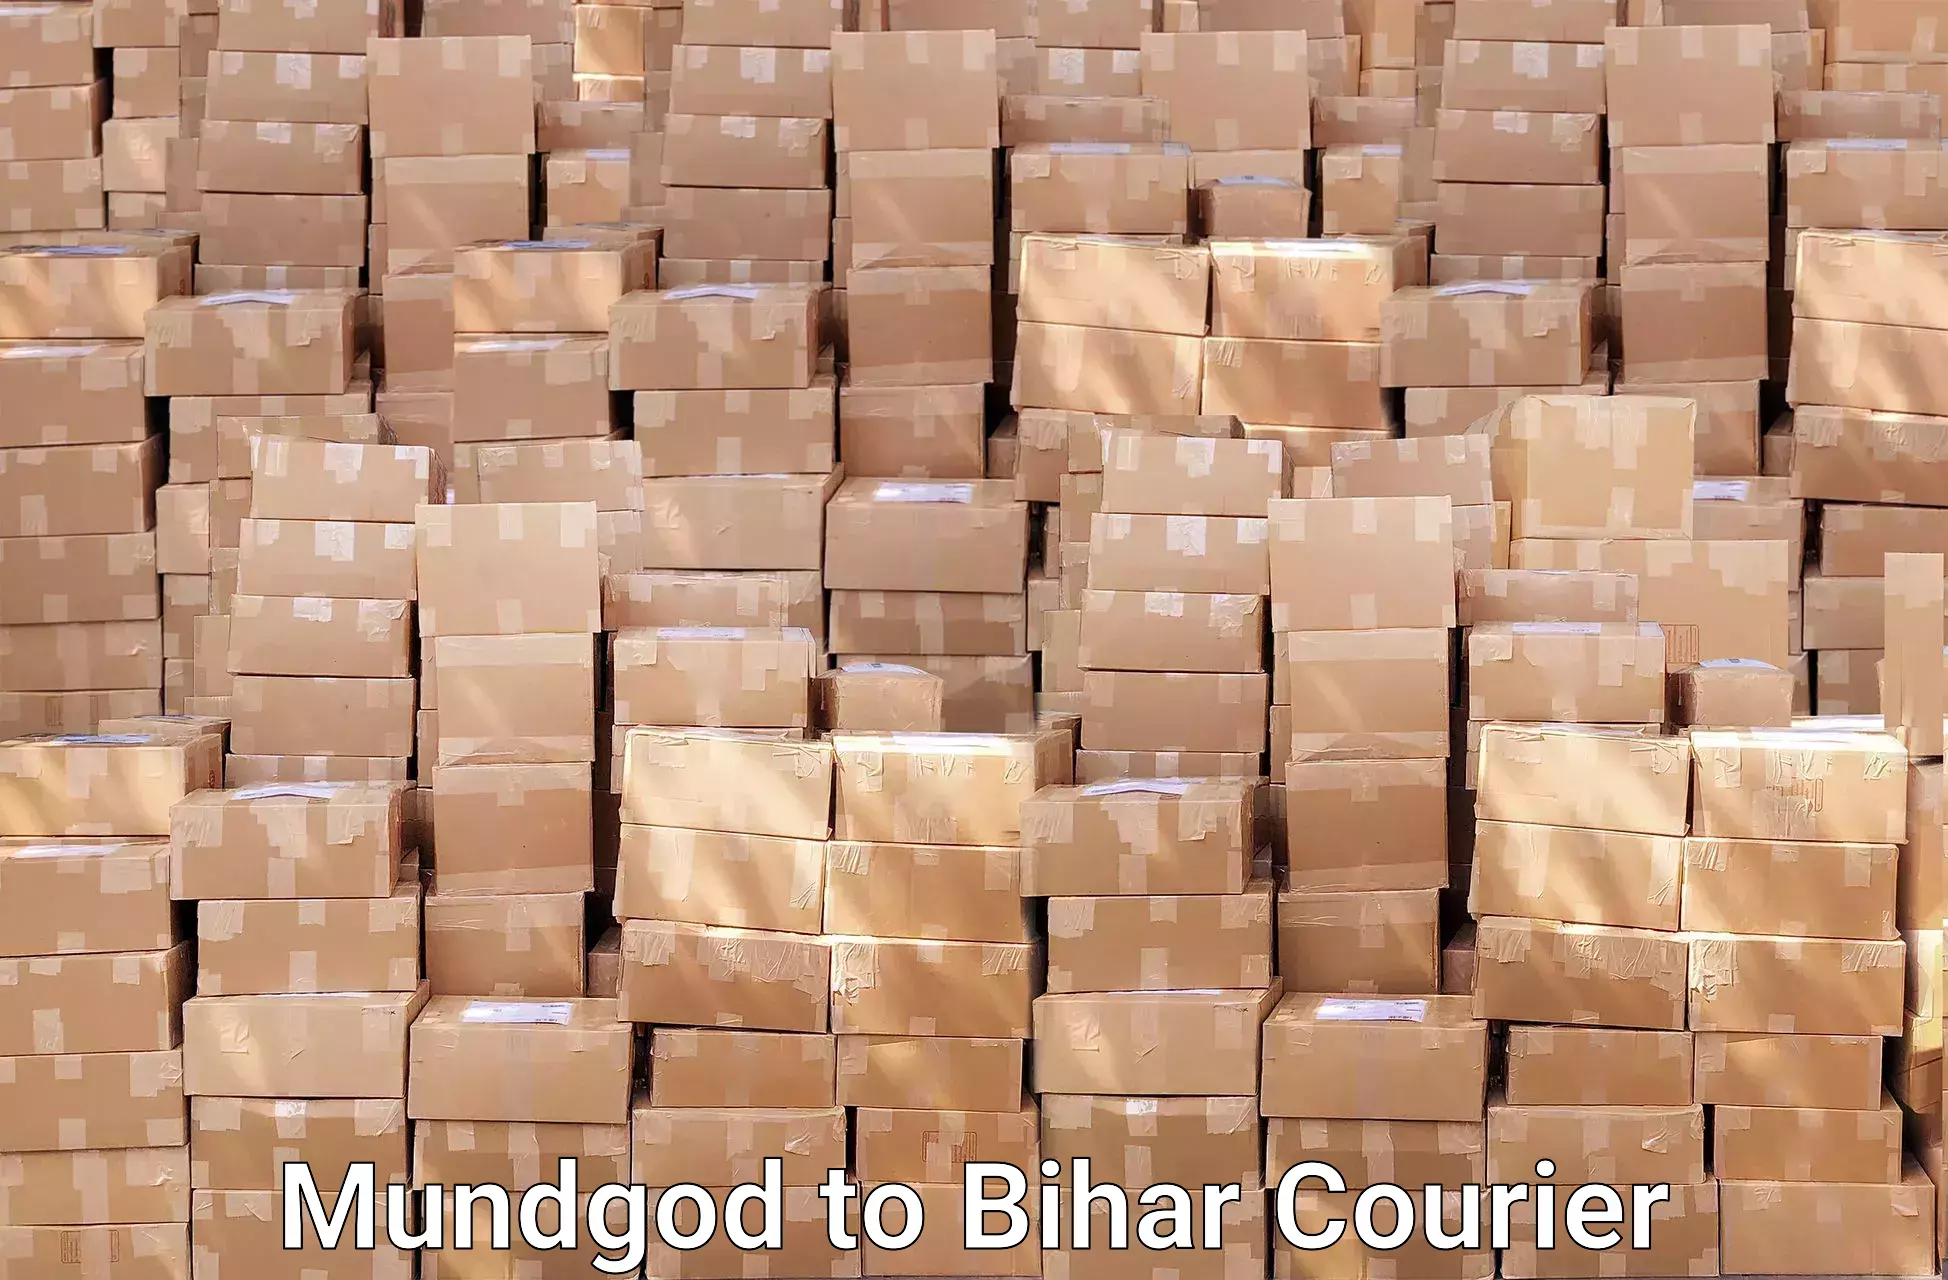 Household goods transport service in Mundgod to Dhaka